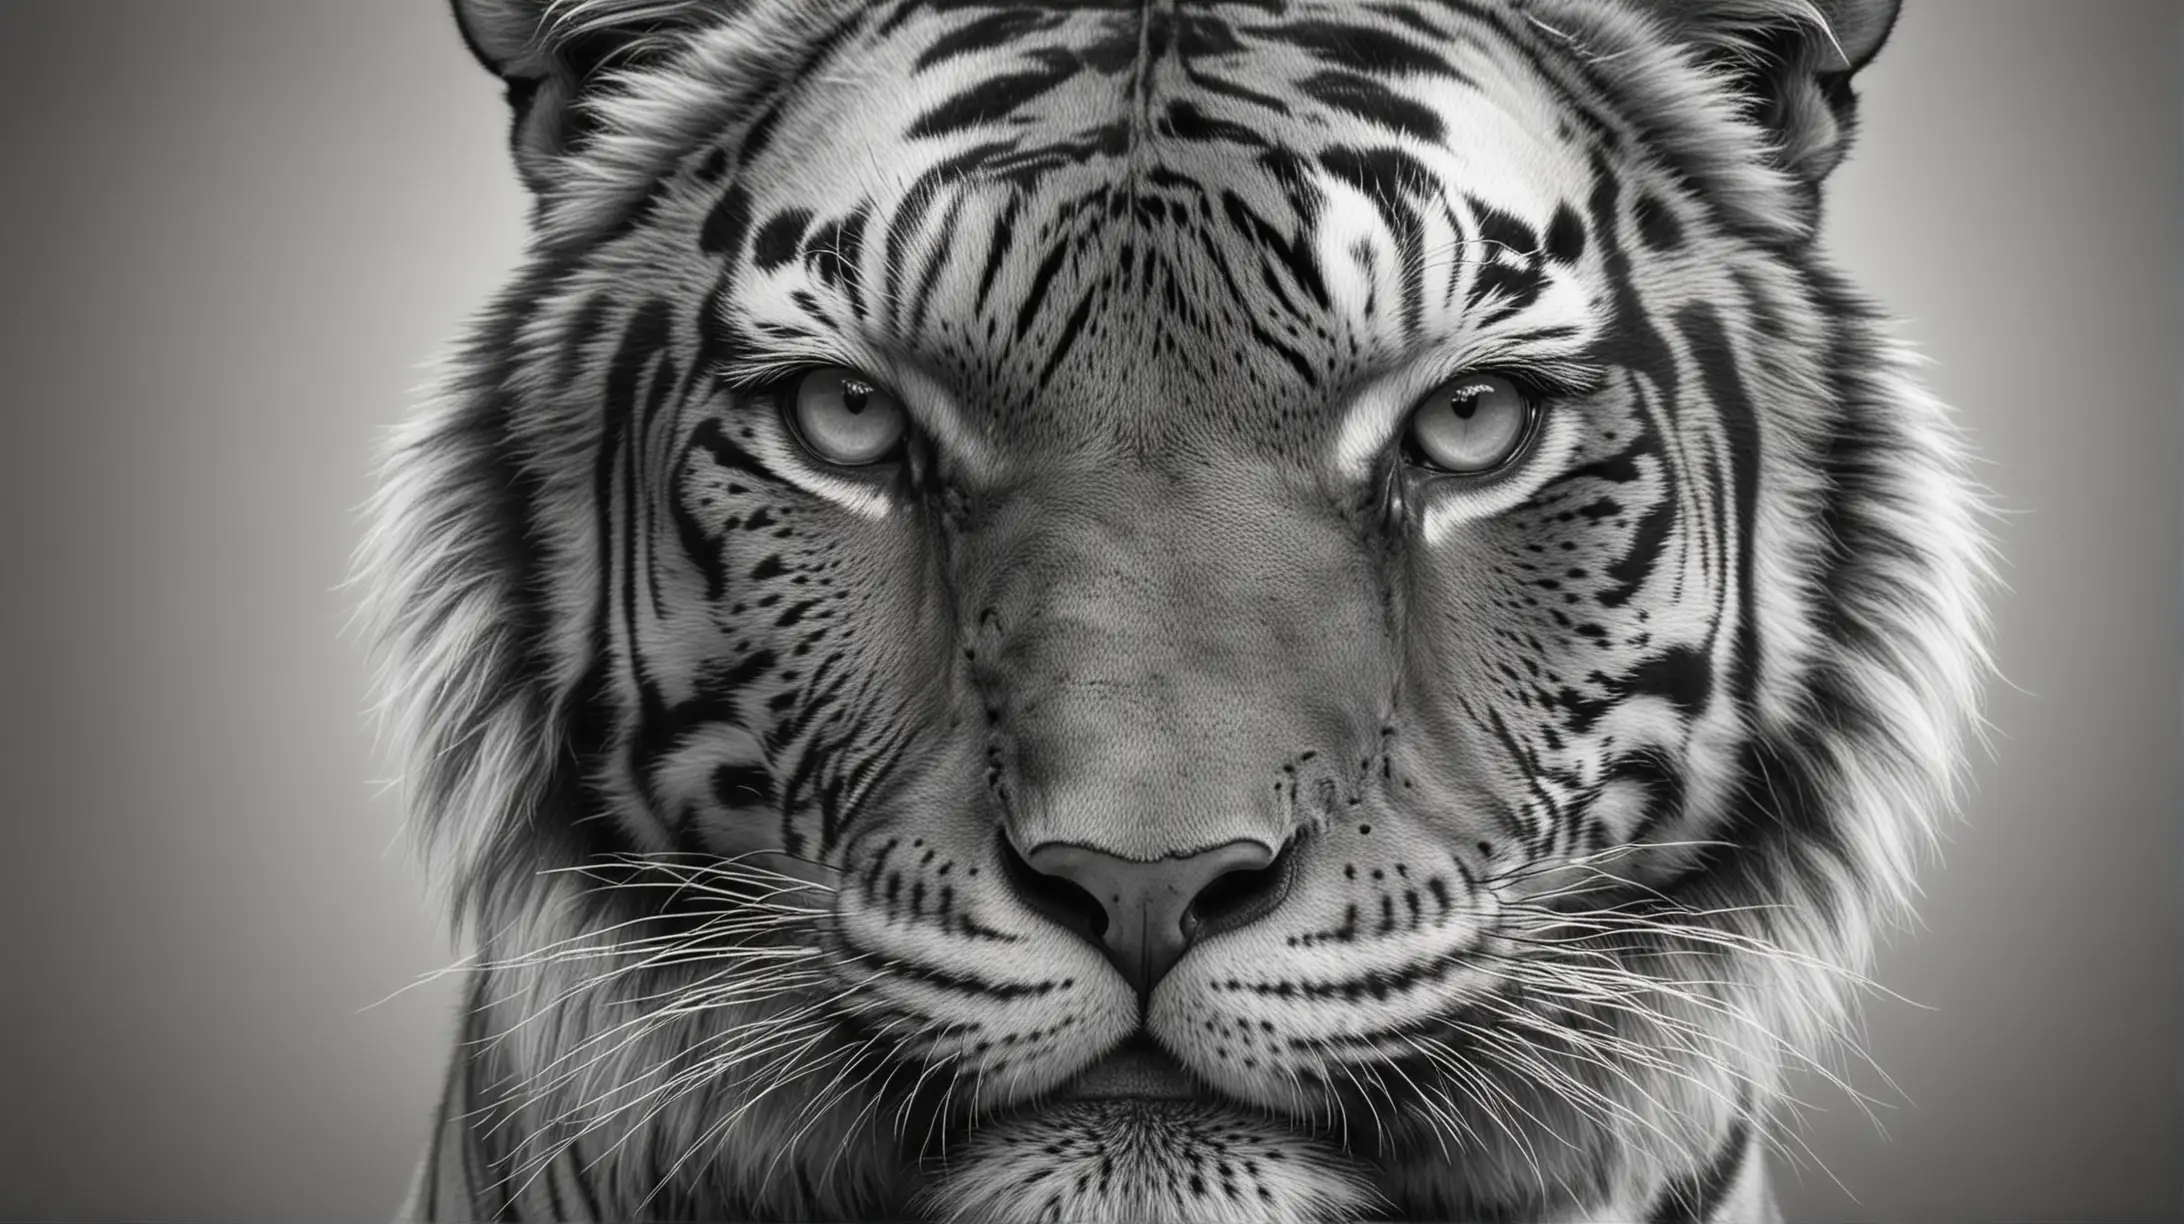 Erstelle ein hyperrealistisches Schwarz-Weiß-Bild eines Tigers, auf dem nur sein Kopf zu sehen ist. Achte darauf, dass das Bild nur den Kopf des Tigers zeigt und dass jedes Detail des Gesichts des Tigers klar und präzise dargestellt wird. Verwende nur Schwarz und Weiß, um einen kontrastreichen und dramatischen Effekt zu erzielen, der die Stärke und Schönheit des Tigers betont.